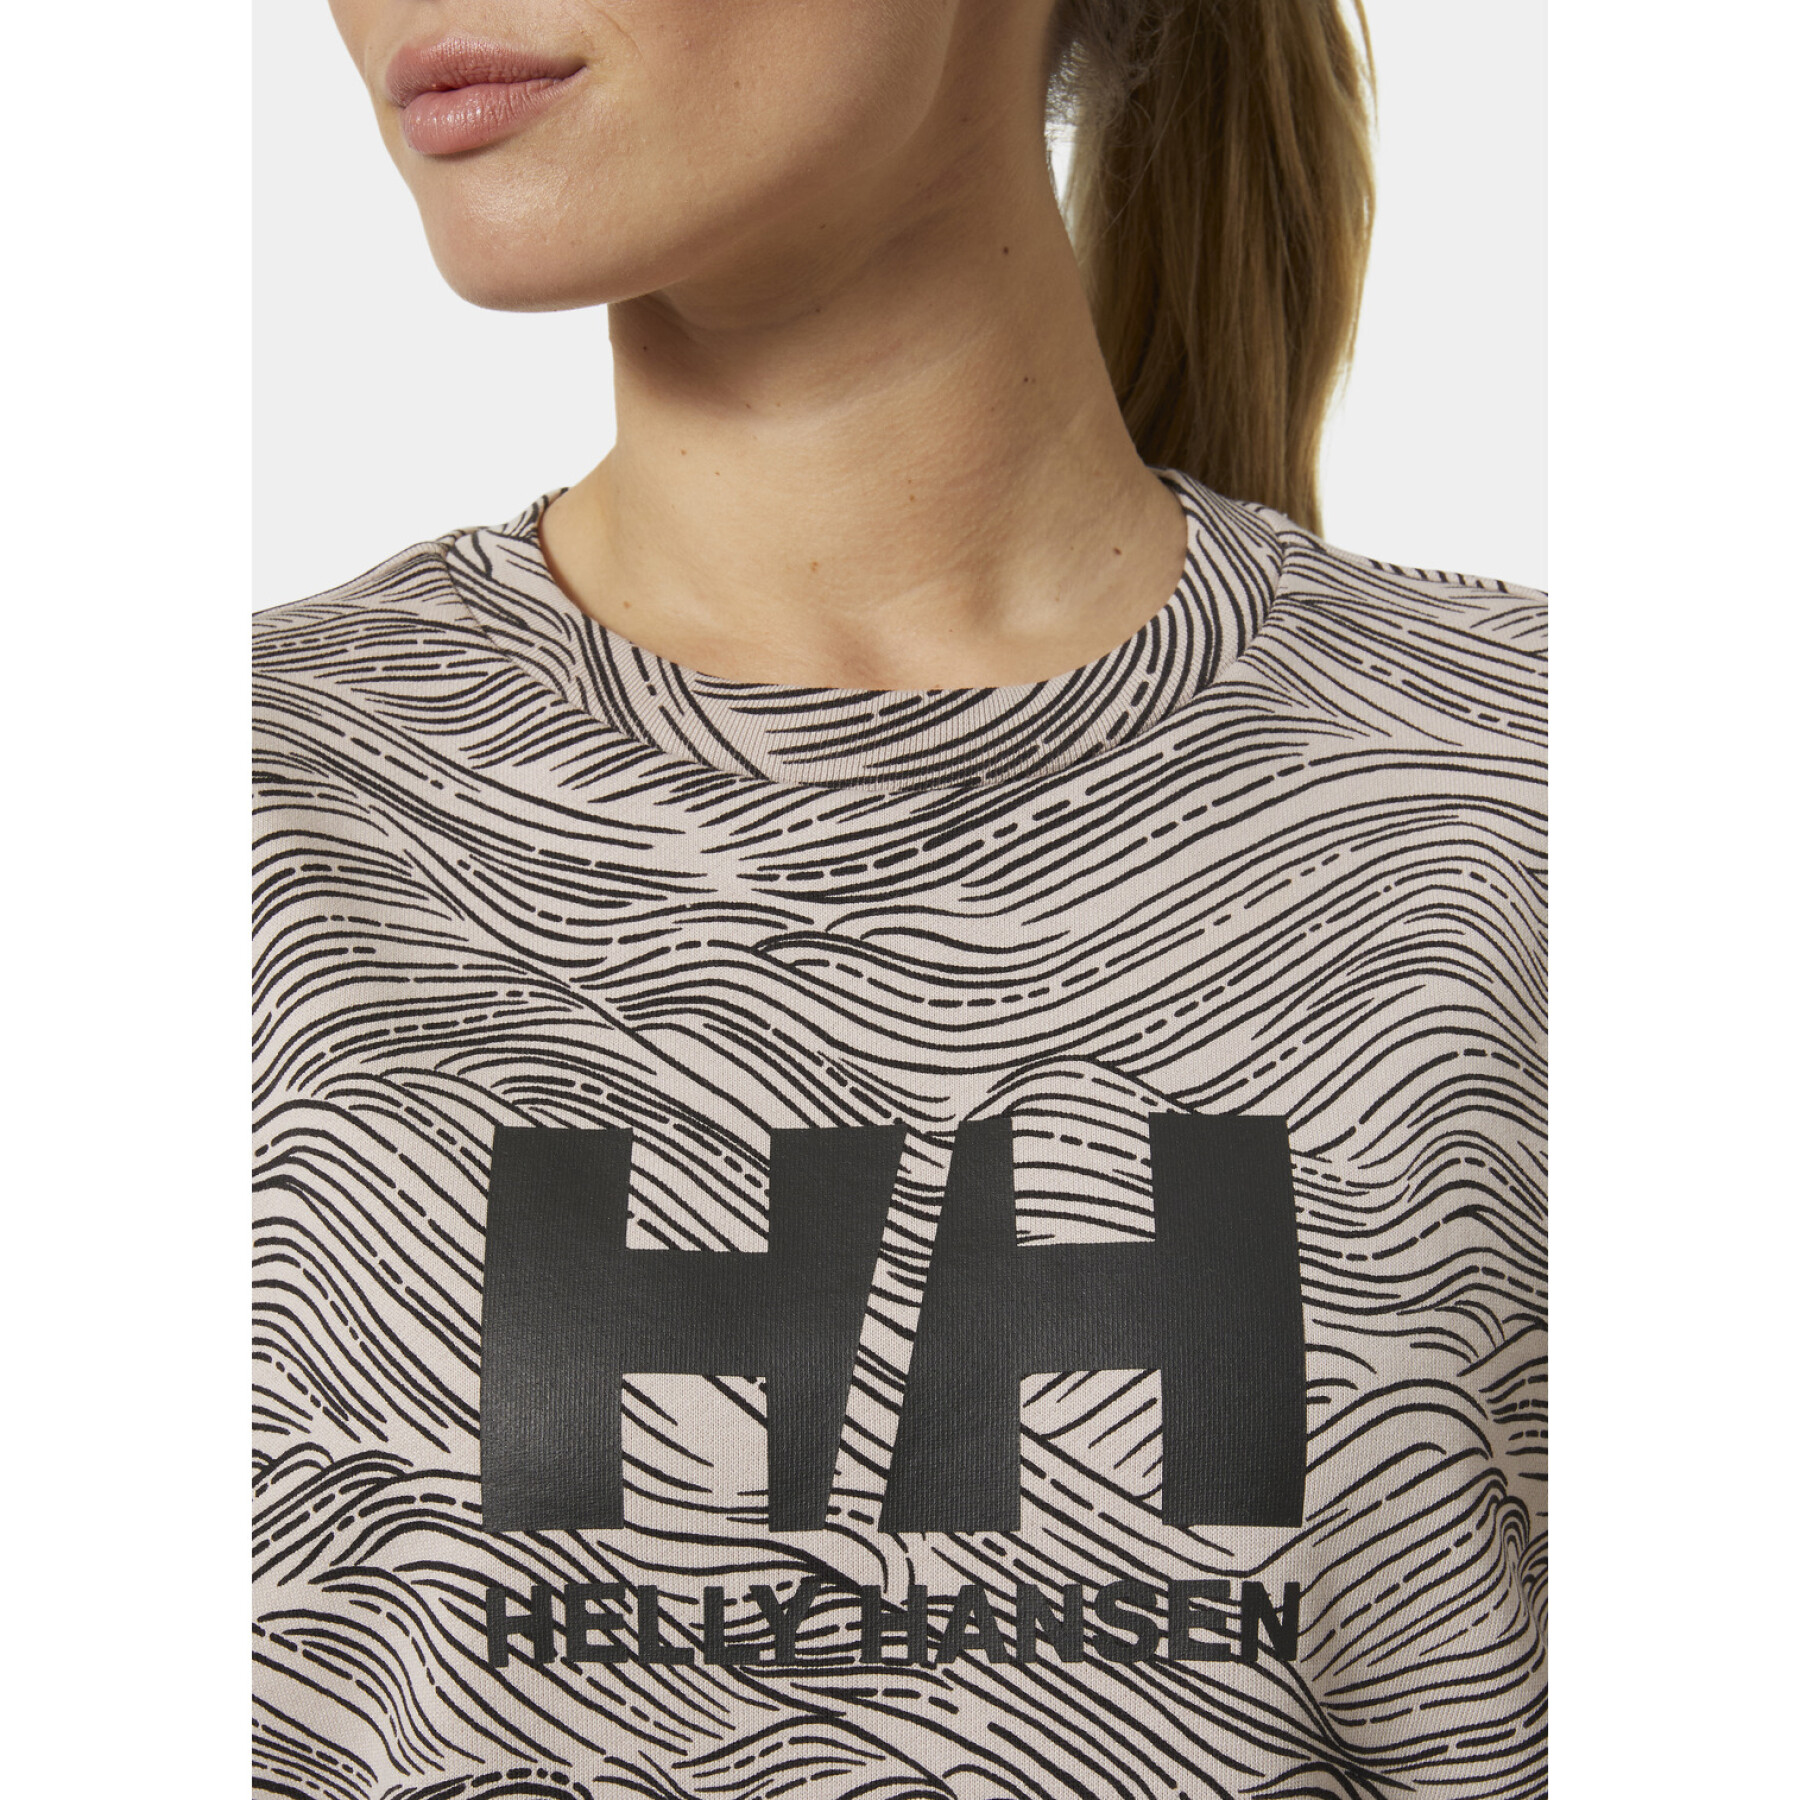 Sweatshirt mit Rundhalsausschnitt, Damen Helly Hansen Graphic 2